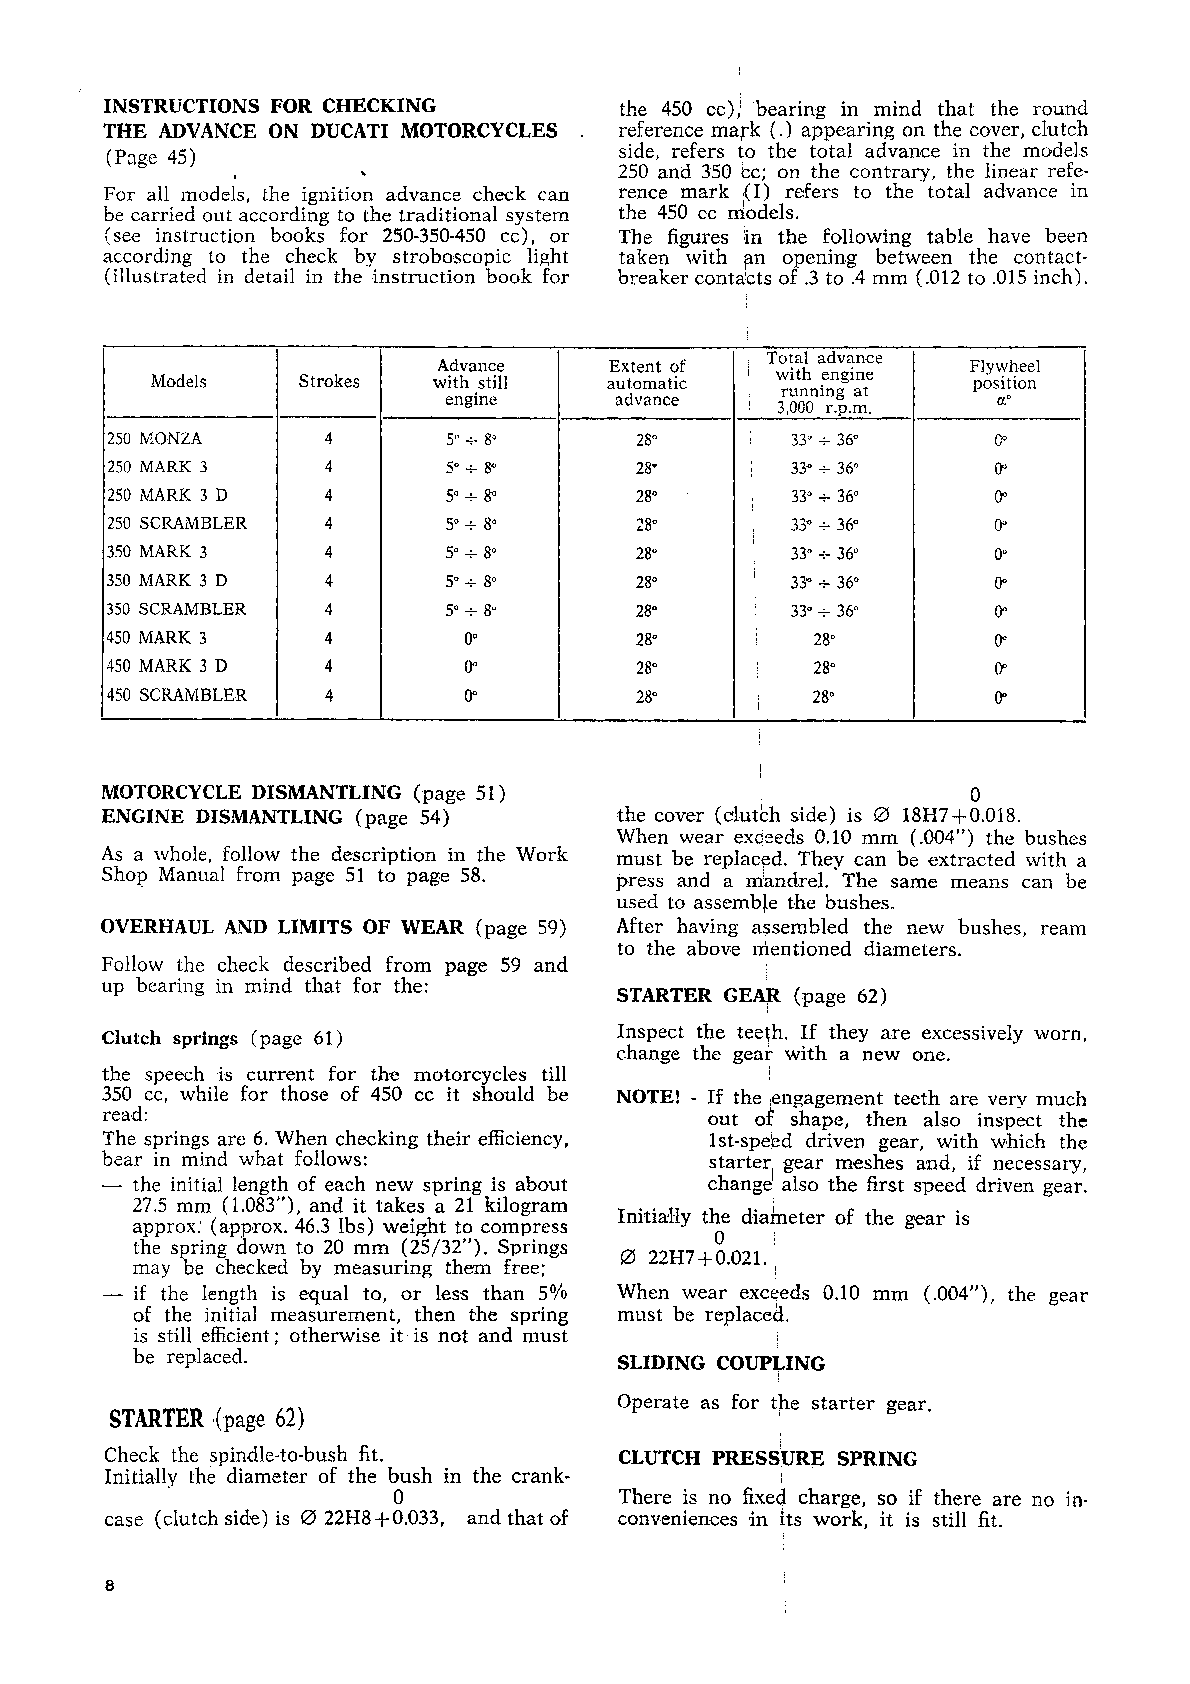 1969-1972 Ducati 450 Mark 3 Service Manual